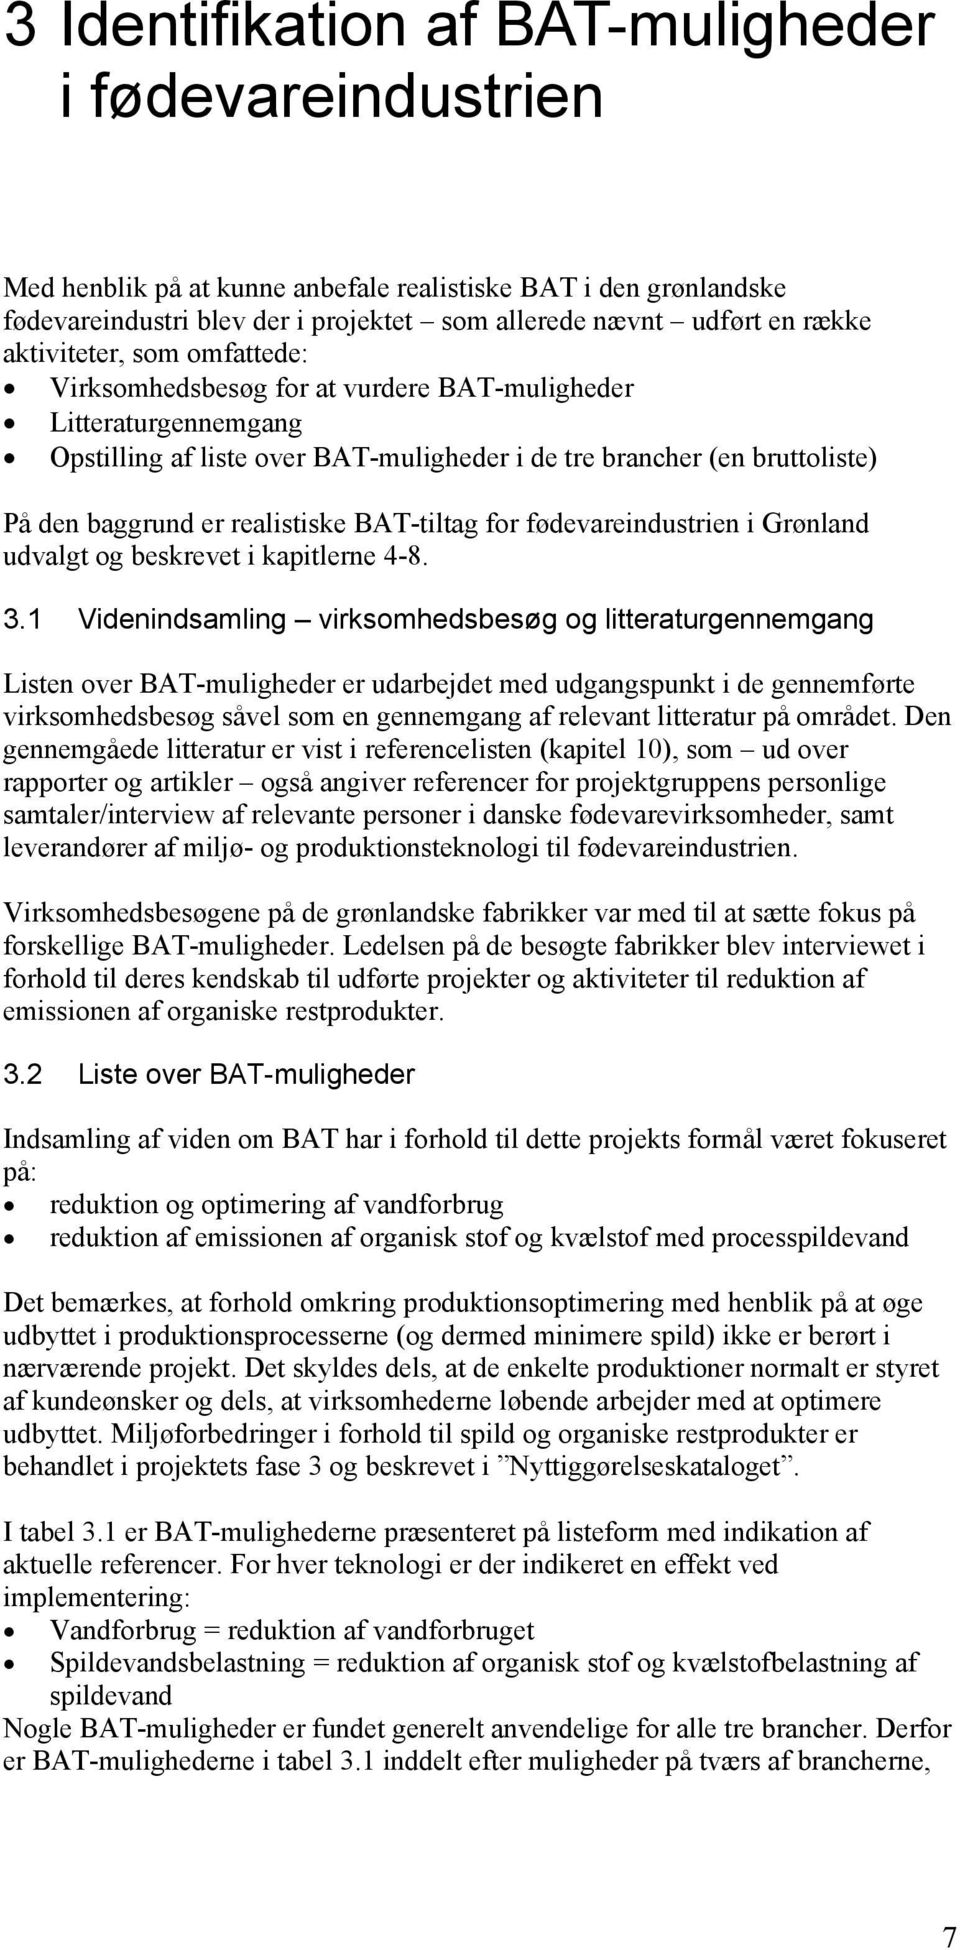 realistiske BAT-tiltag for fødevareindustrien i Grønland udvalgt og beskrevet i kapitlerne 4-8. 3.